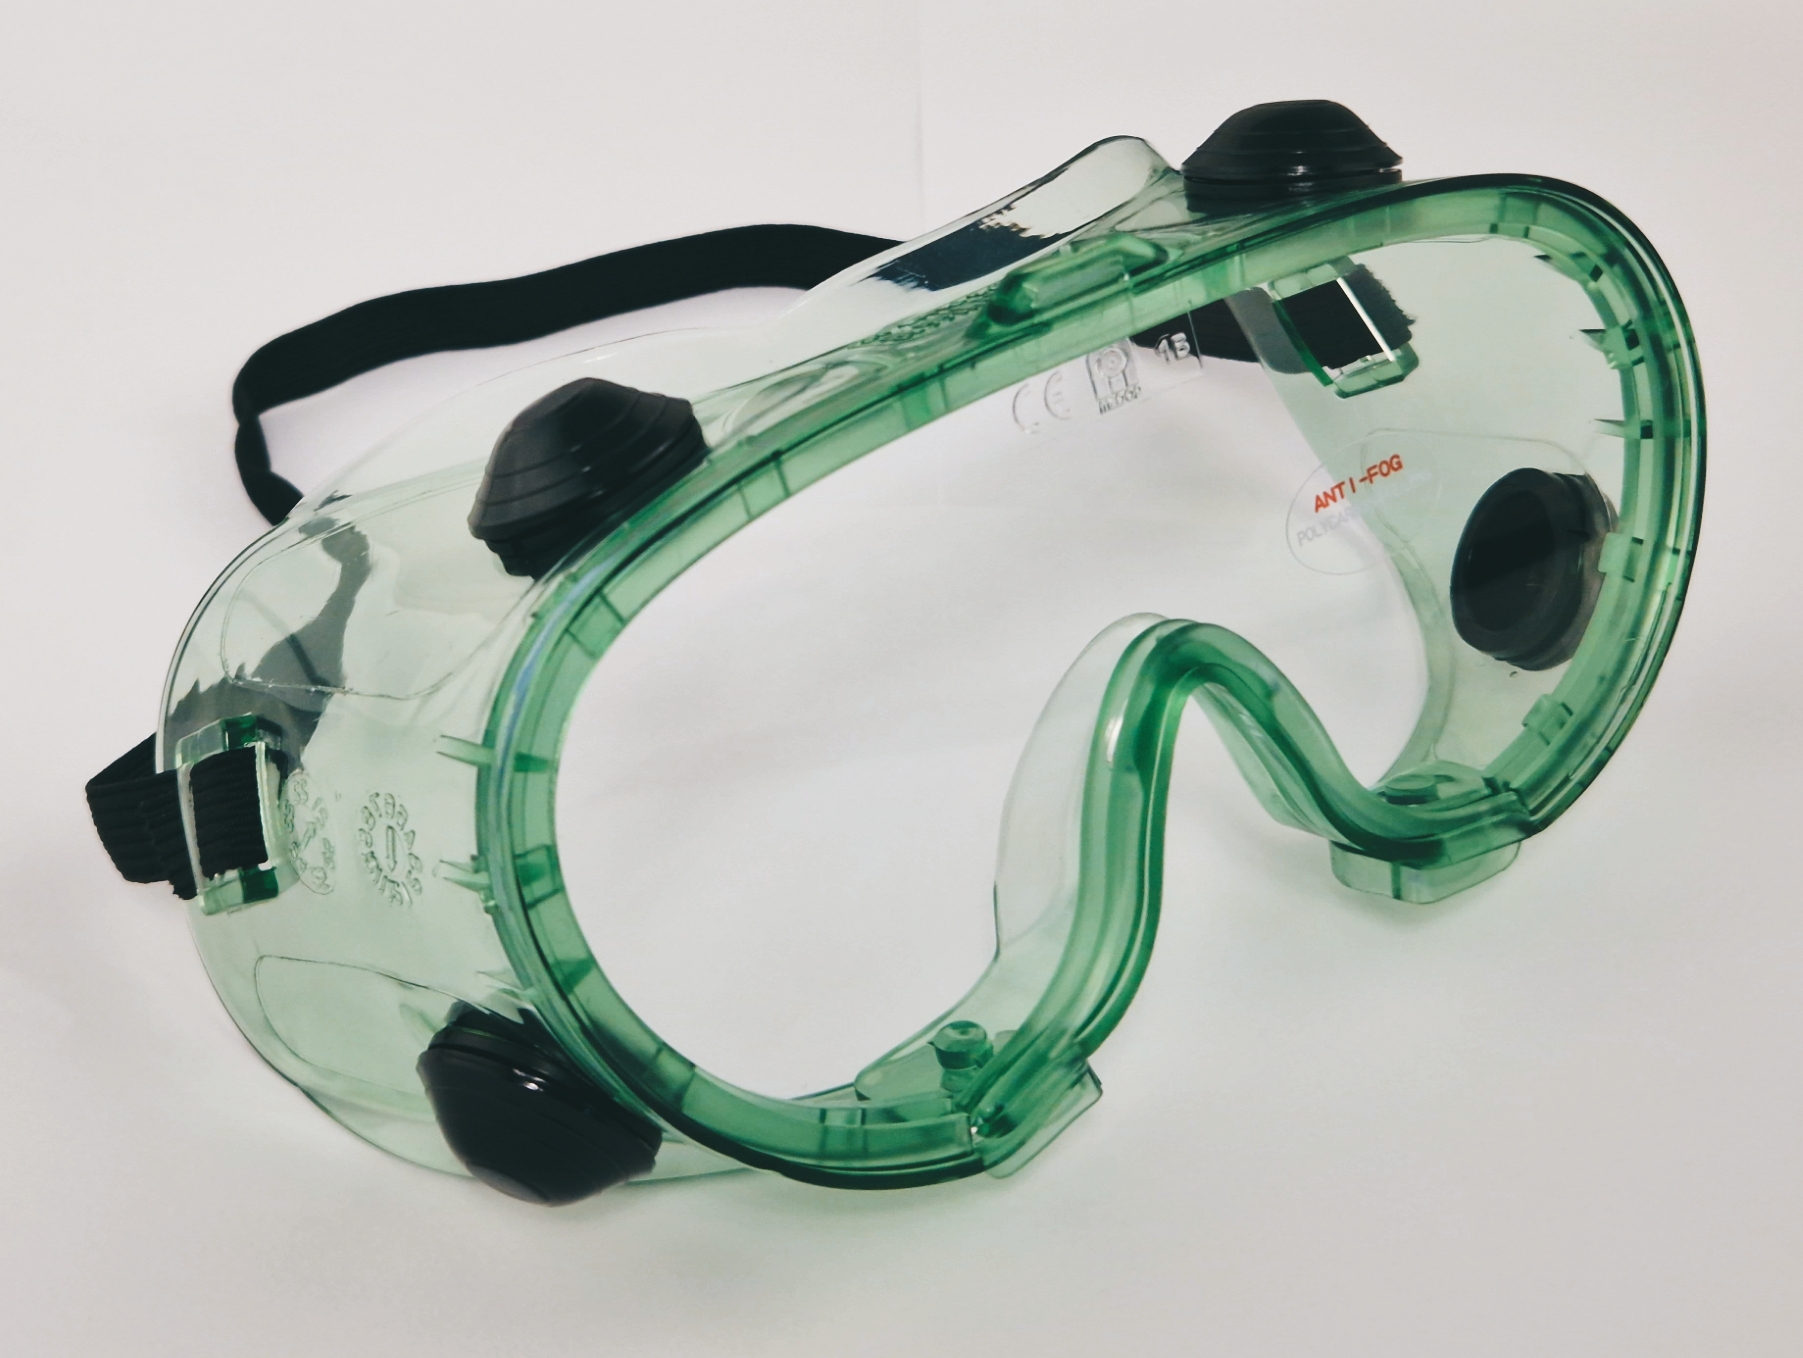 Medop - Vollsichtbrille GP3 Plus